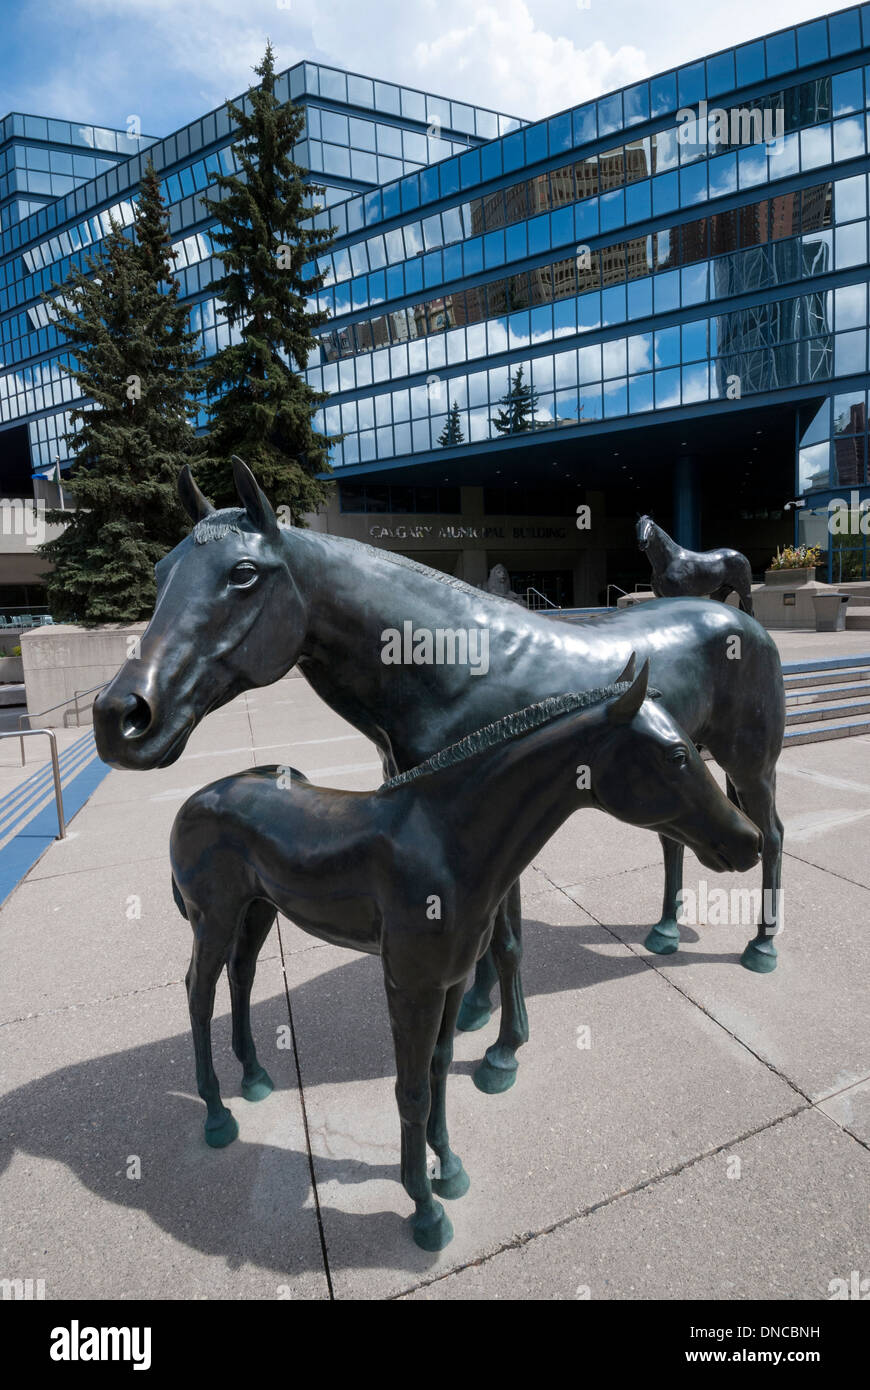 La sculpture de cheval sur la terrasse près de l'entrée du nouveau bâtiment municipal dans la ville de Calgary en Alberta. Banque D'Images